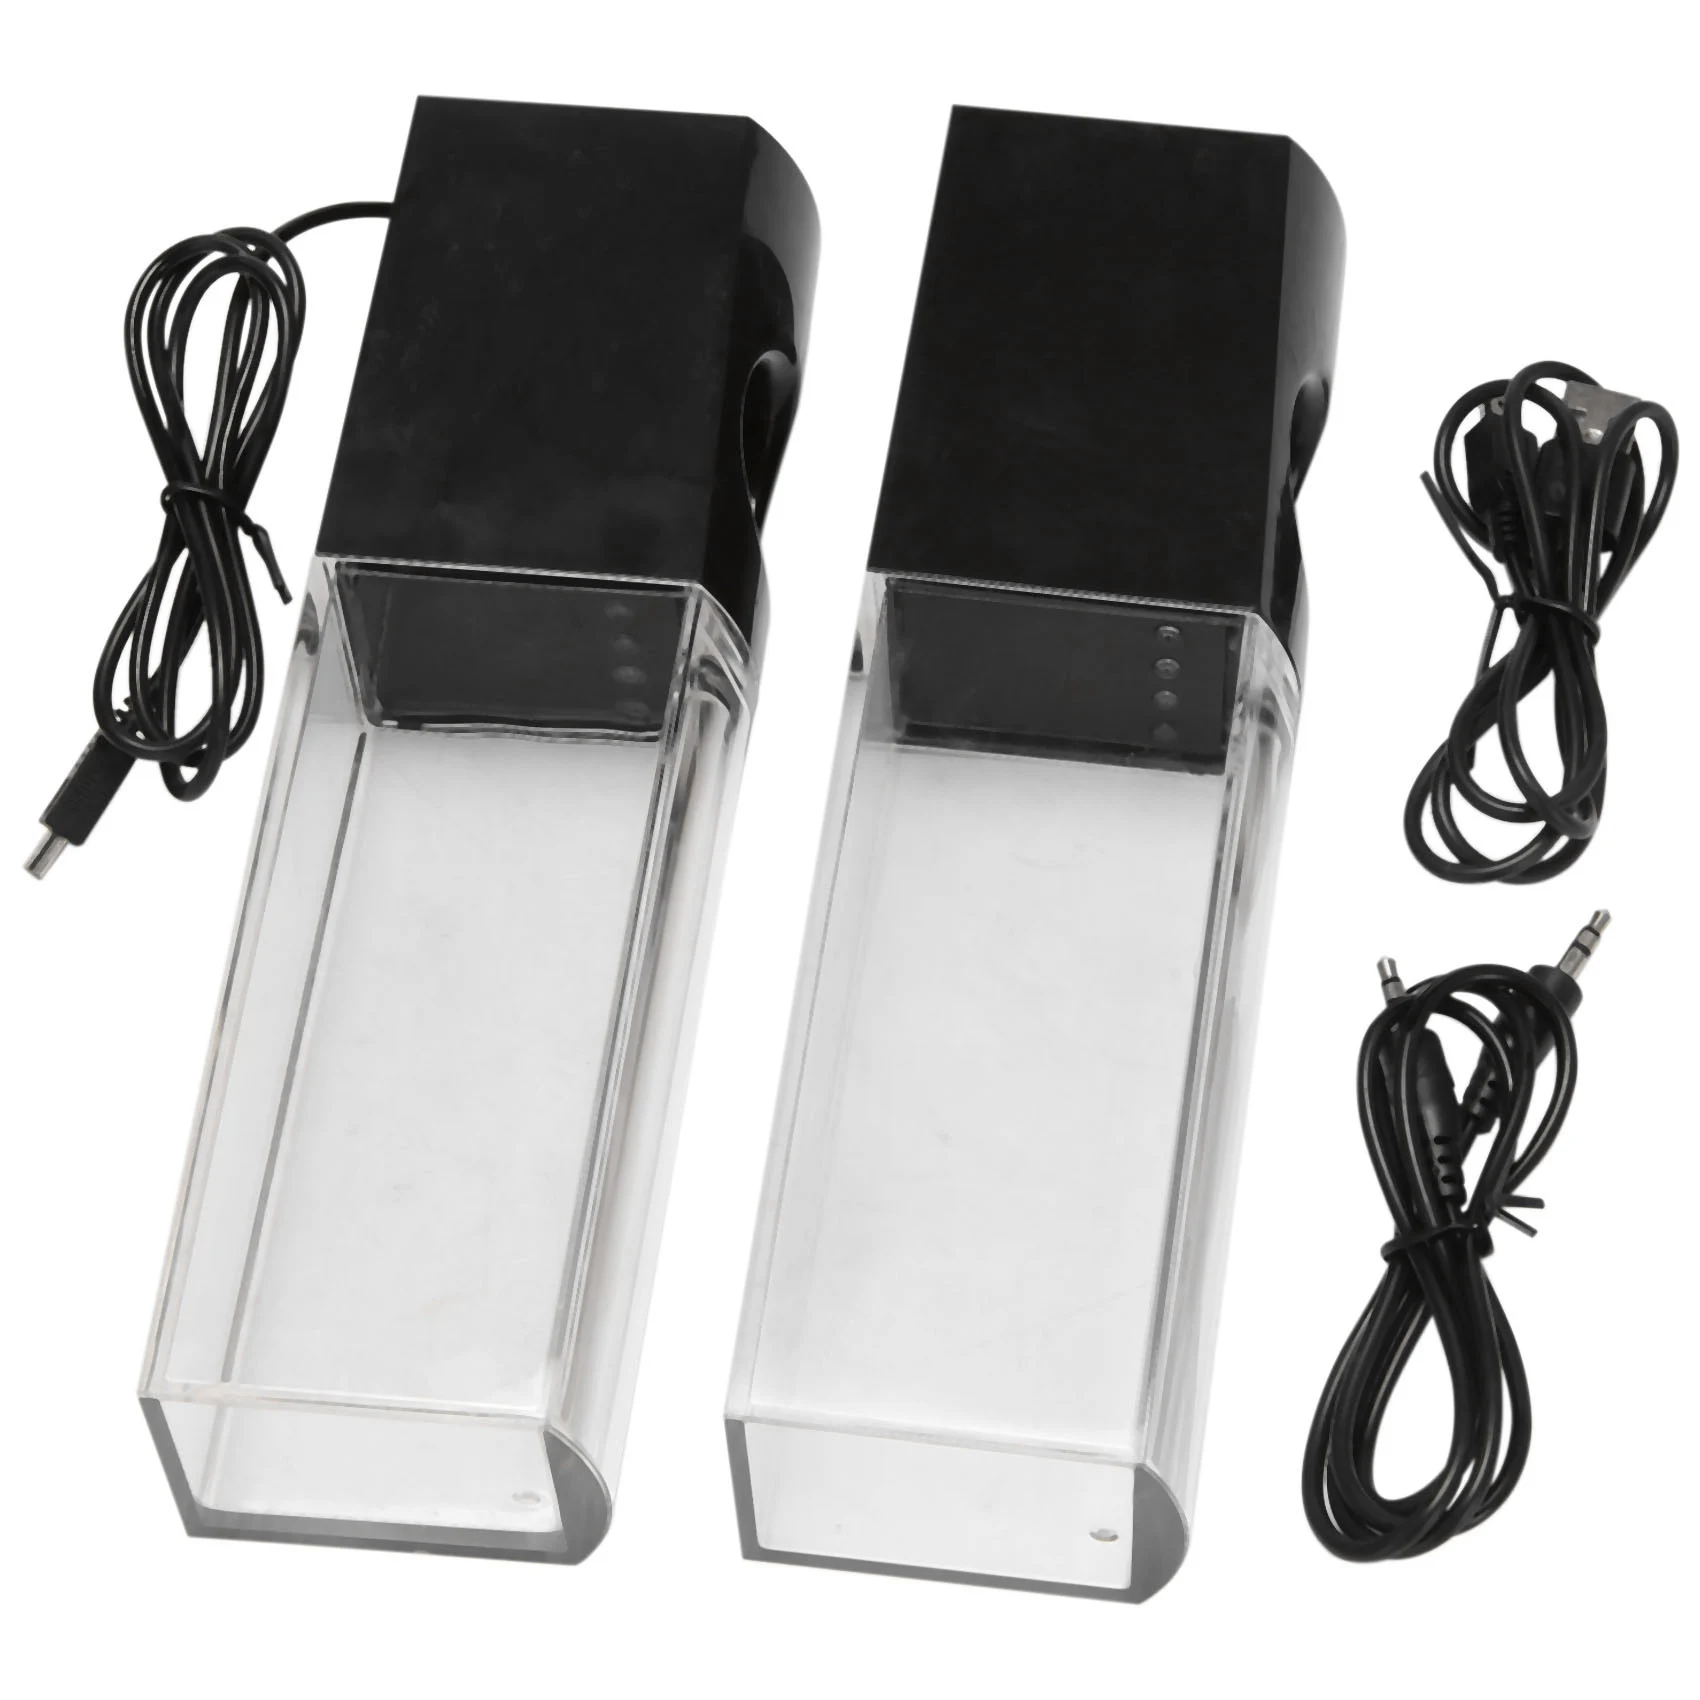 

2PCS LED Light Speakers Dancing Water Music Fountain Light for PC Laptop for Phone Portable Desk Stereo Speaker Black